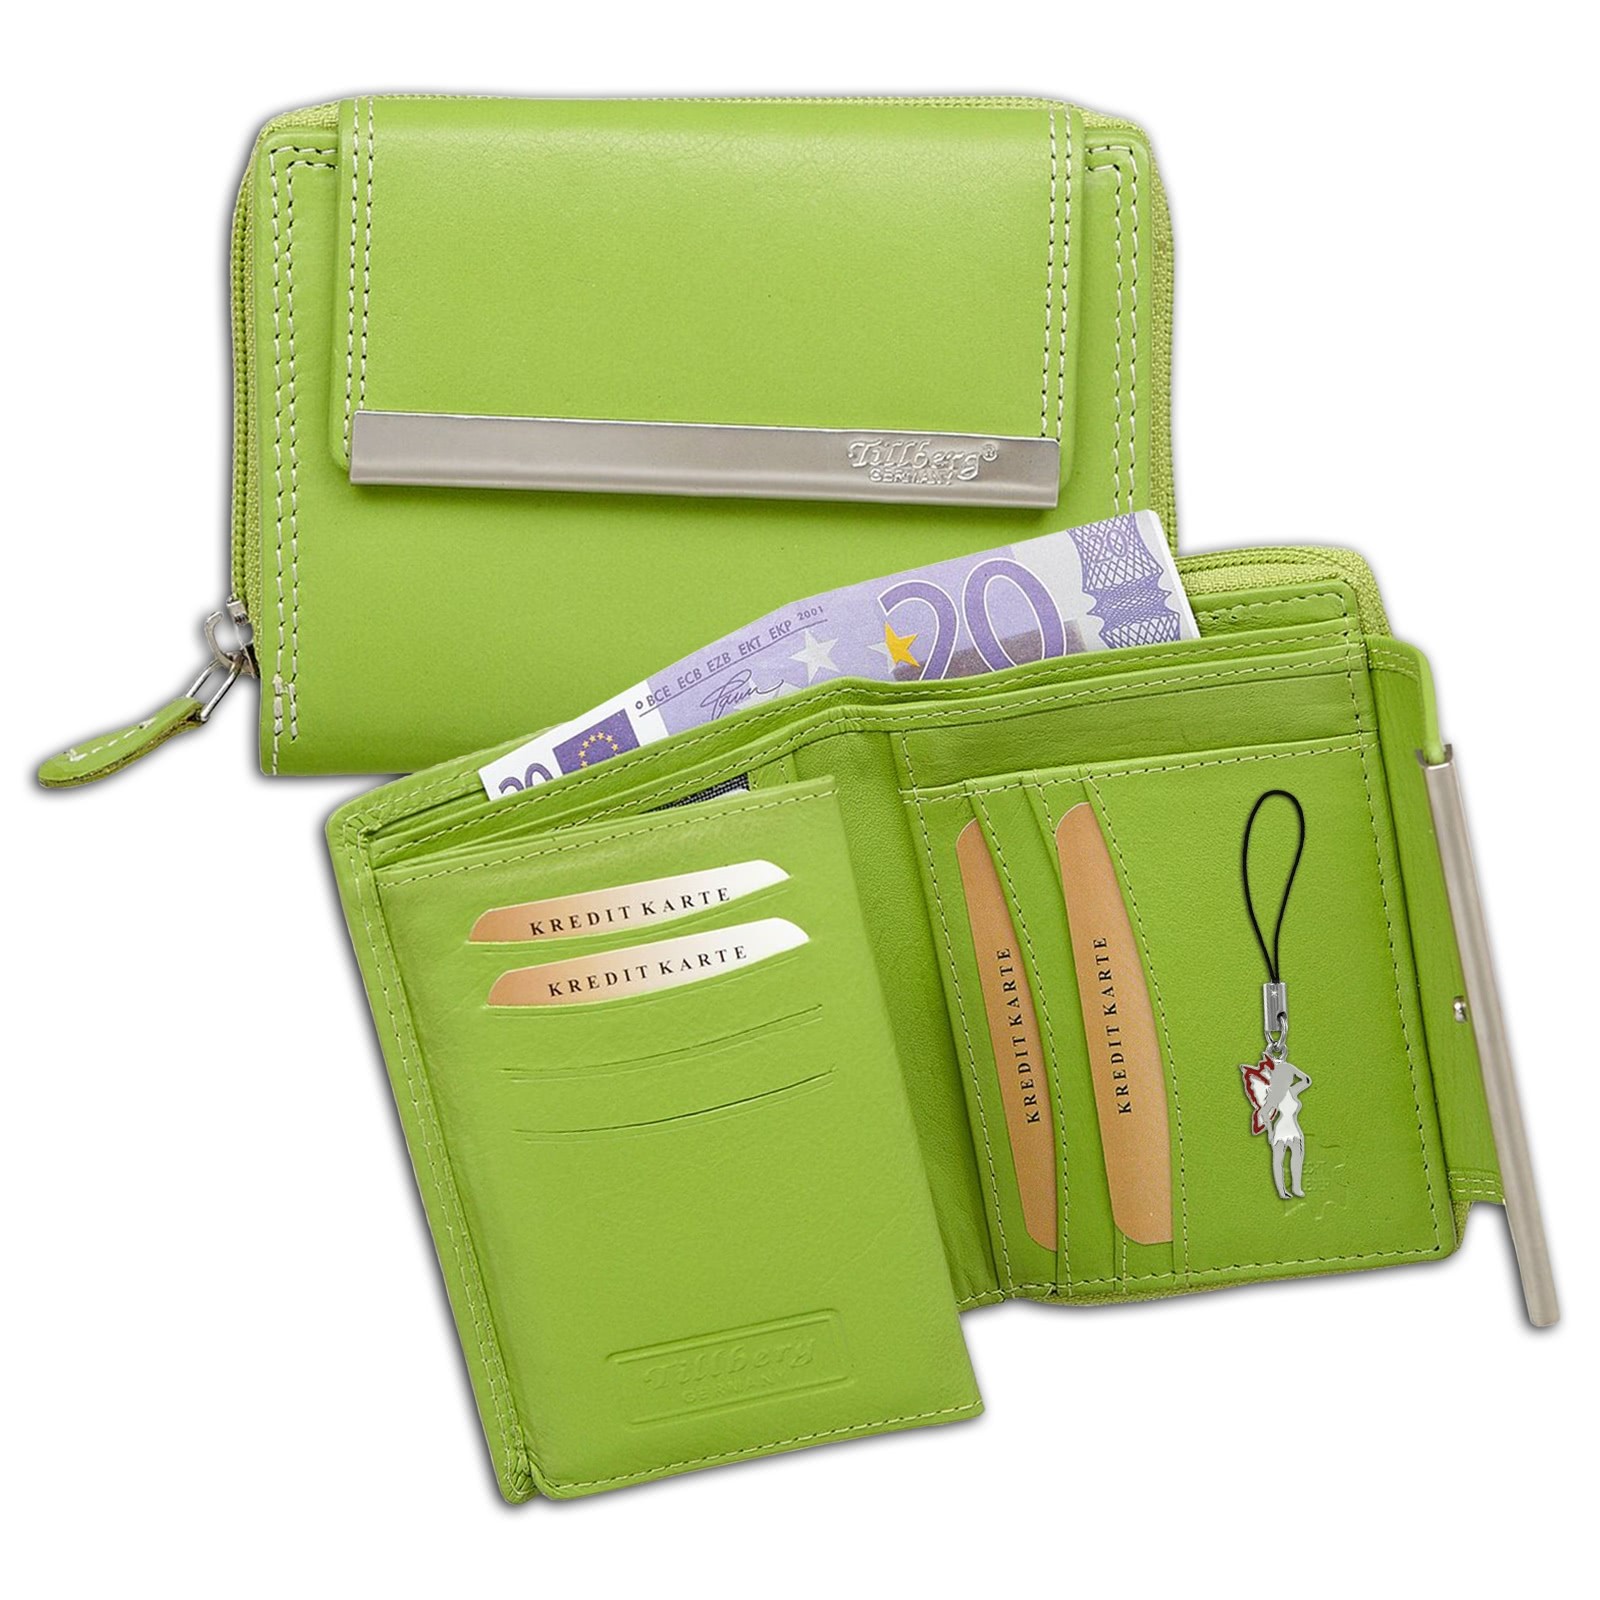 DrachenLeder Geldbörse apfelgrün Leder Portemonnaie Brieftasche Damen OPR704L